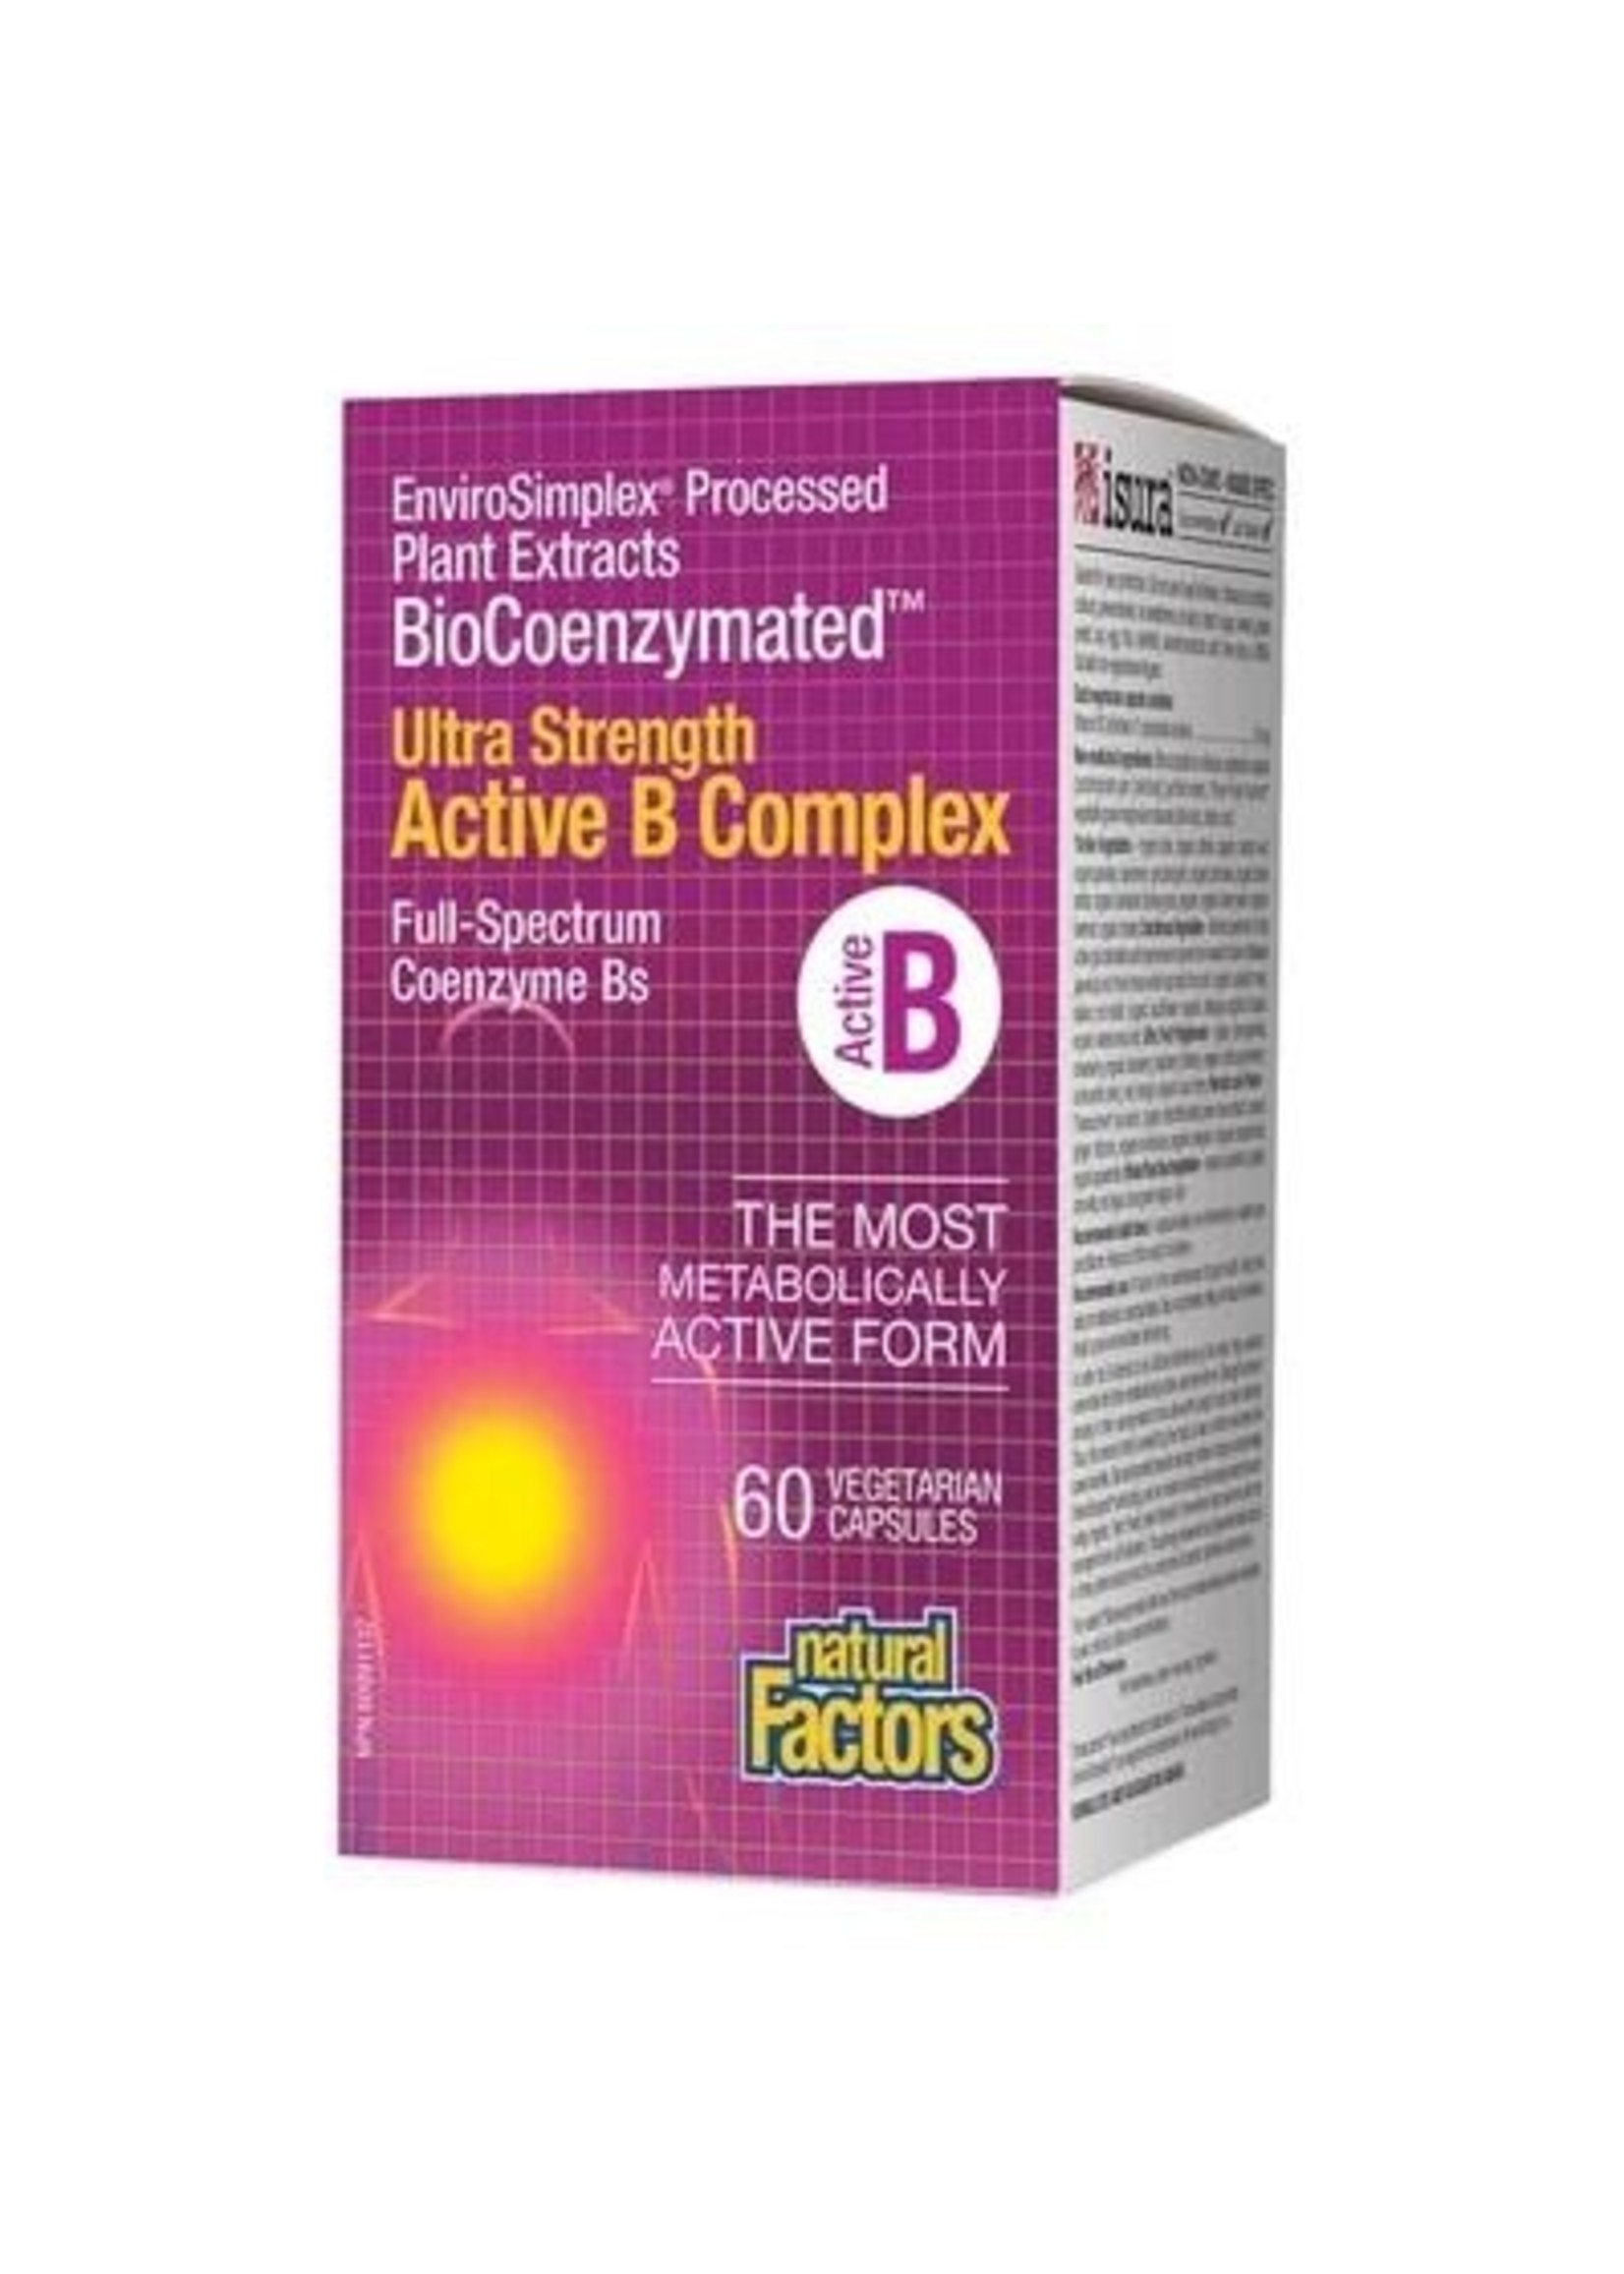 Natural Factors SALE - Natural Factors Ultra Strength Active B Complex 60 caps